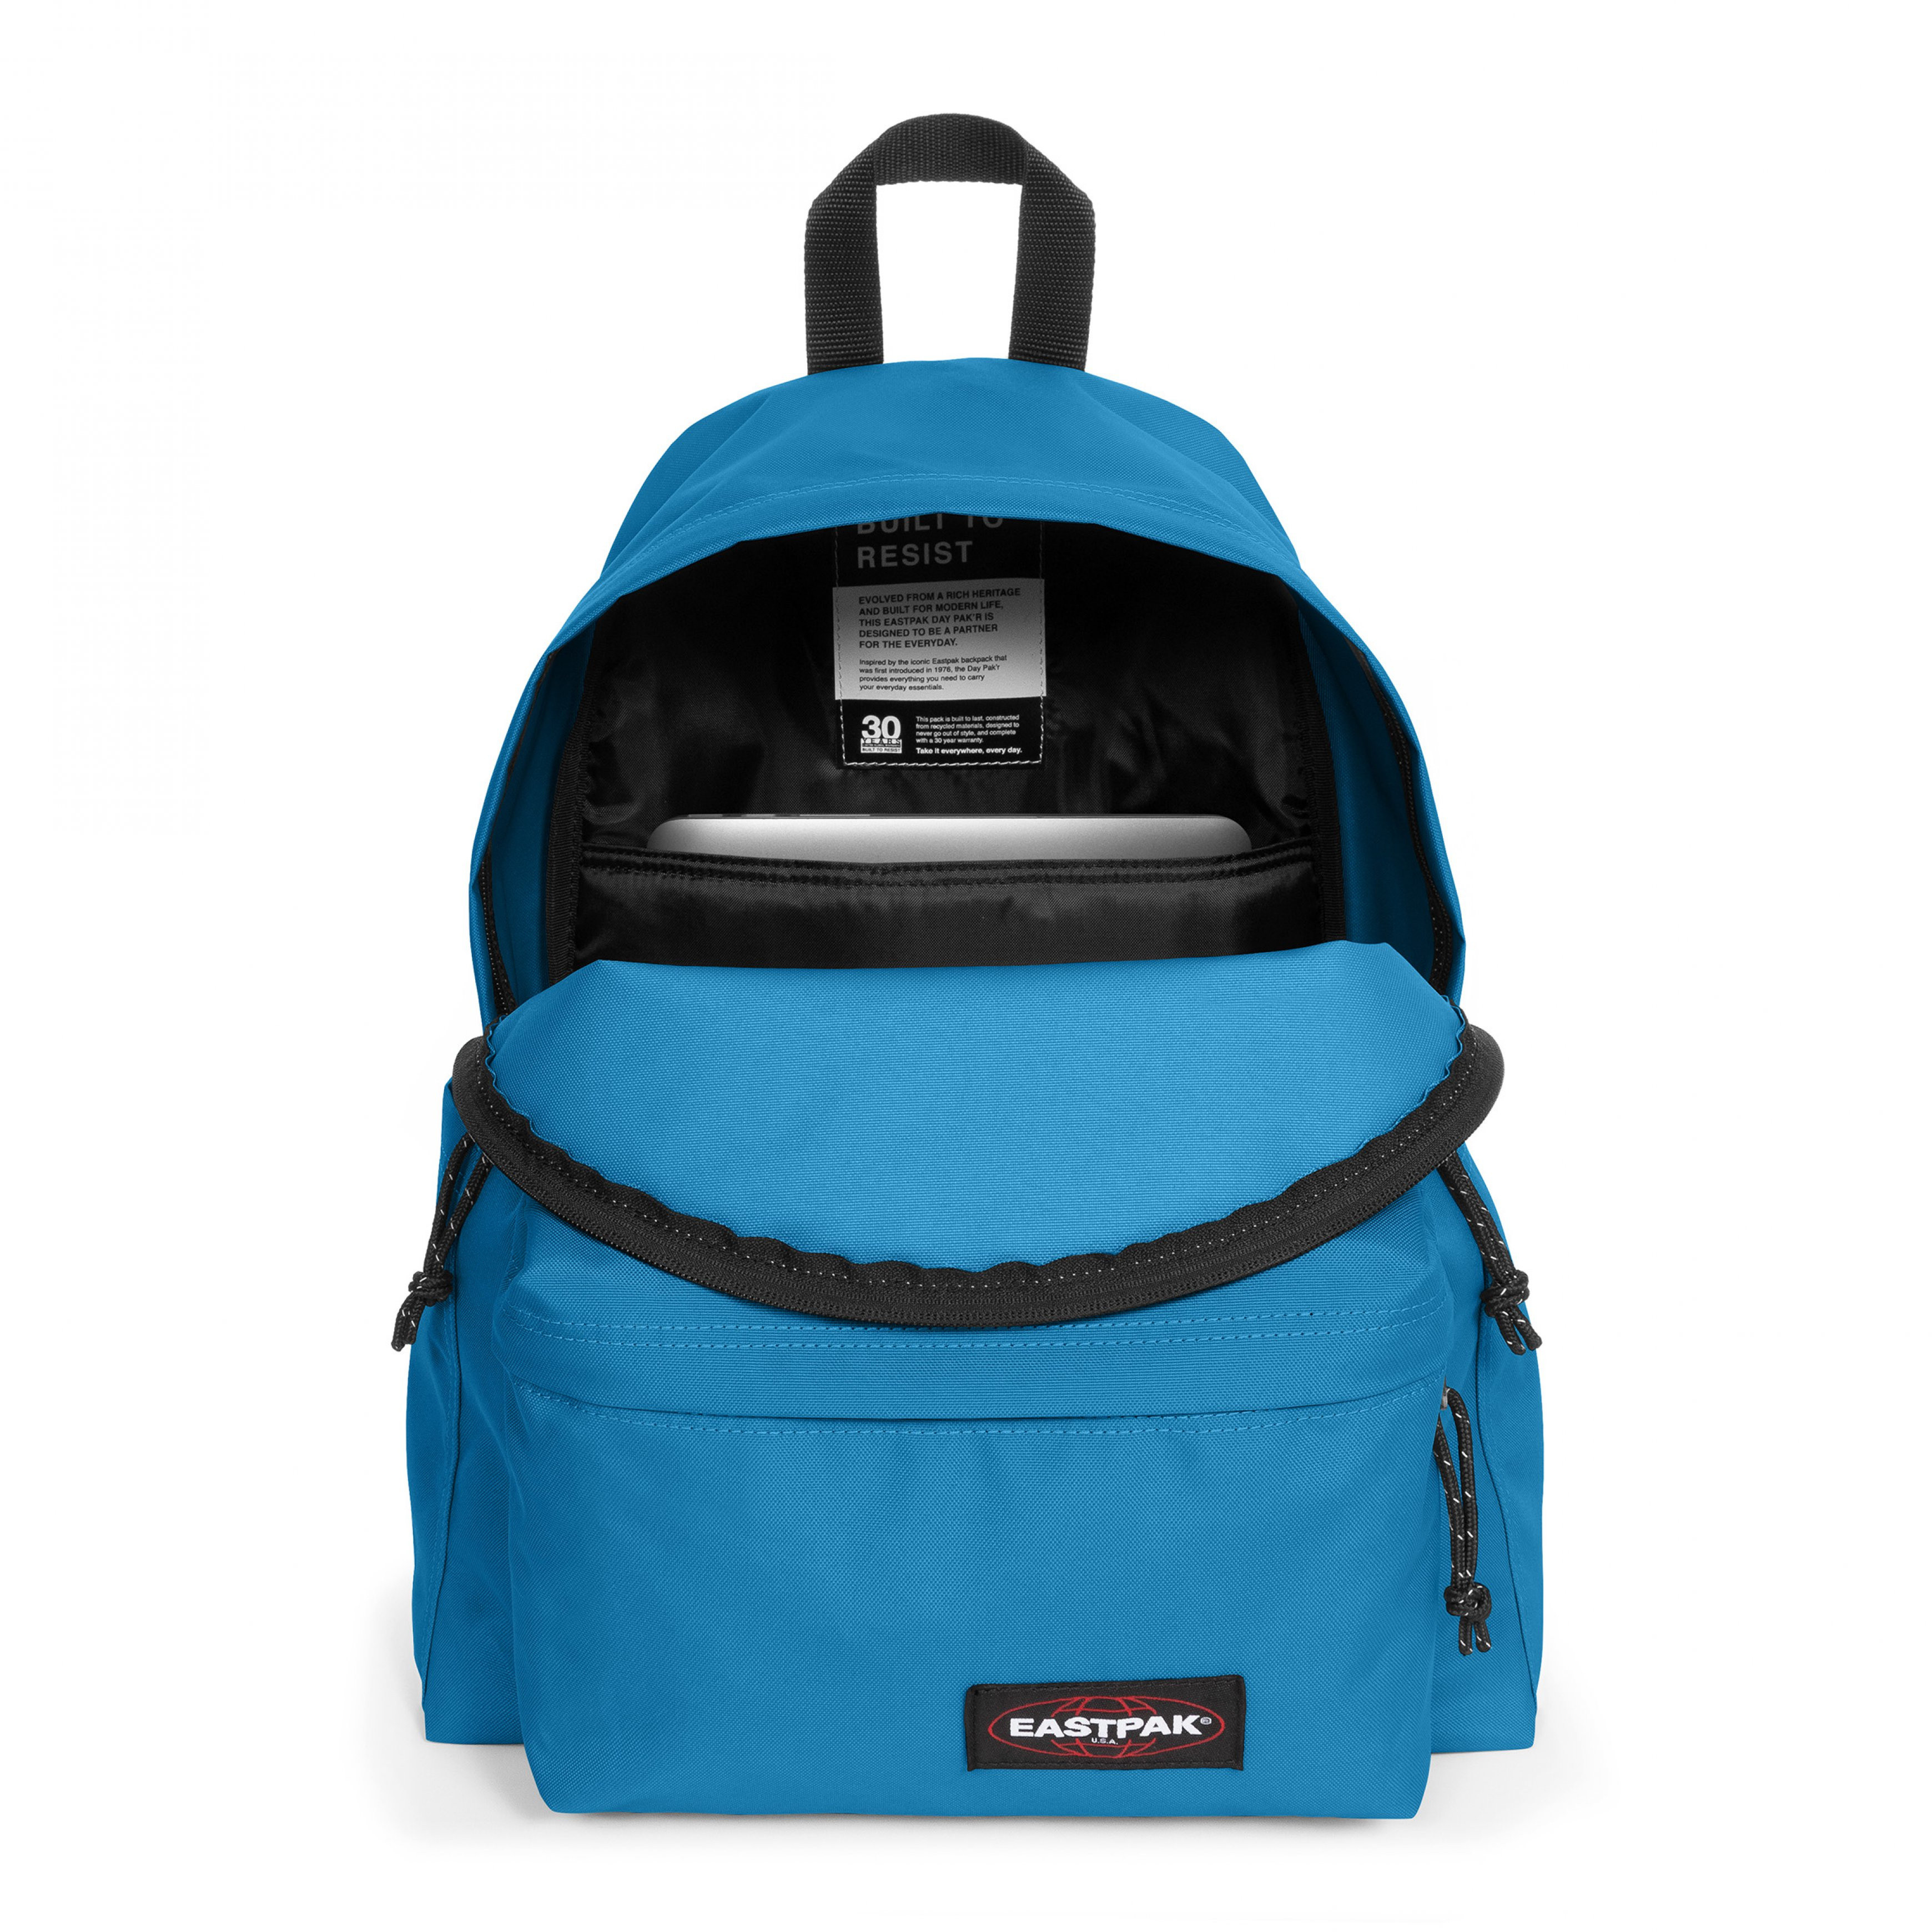 Eastpak - Day Pak'r Voltaic Blue backpack, Blue Dark, large image number 1